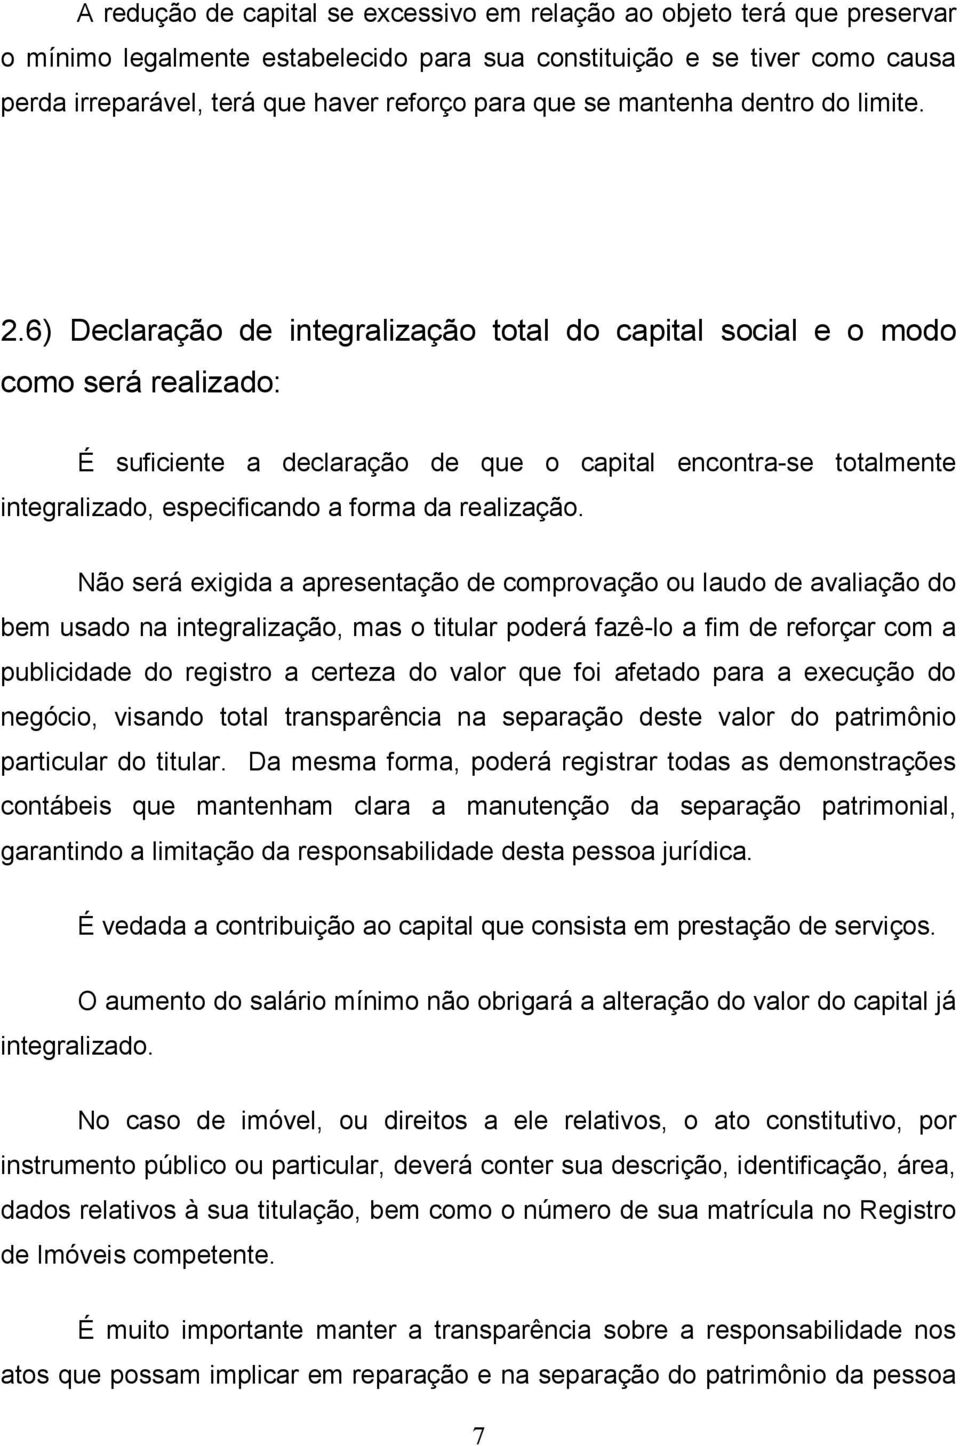 6) Declaração de integralização total do capital social e o modo como será realizado: É suficiente a declaração de que o capital encontra-se totalmente integralizado, especificando a forma da